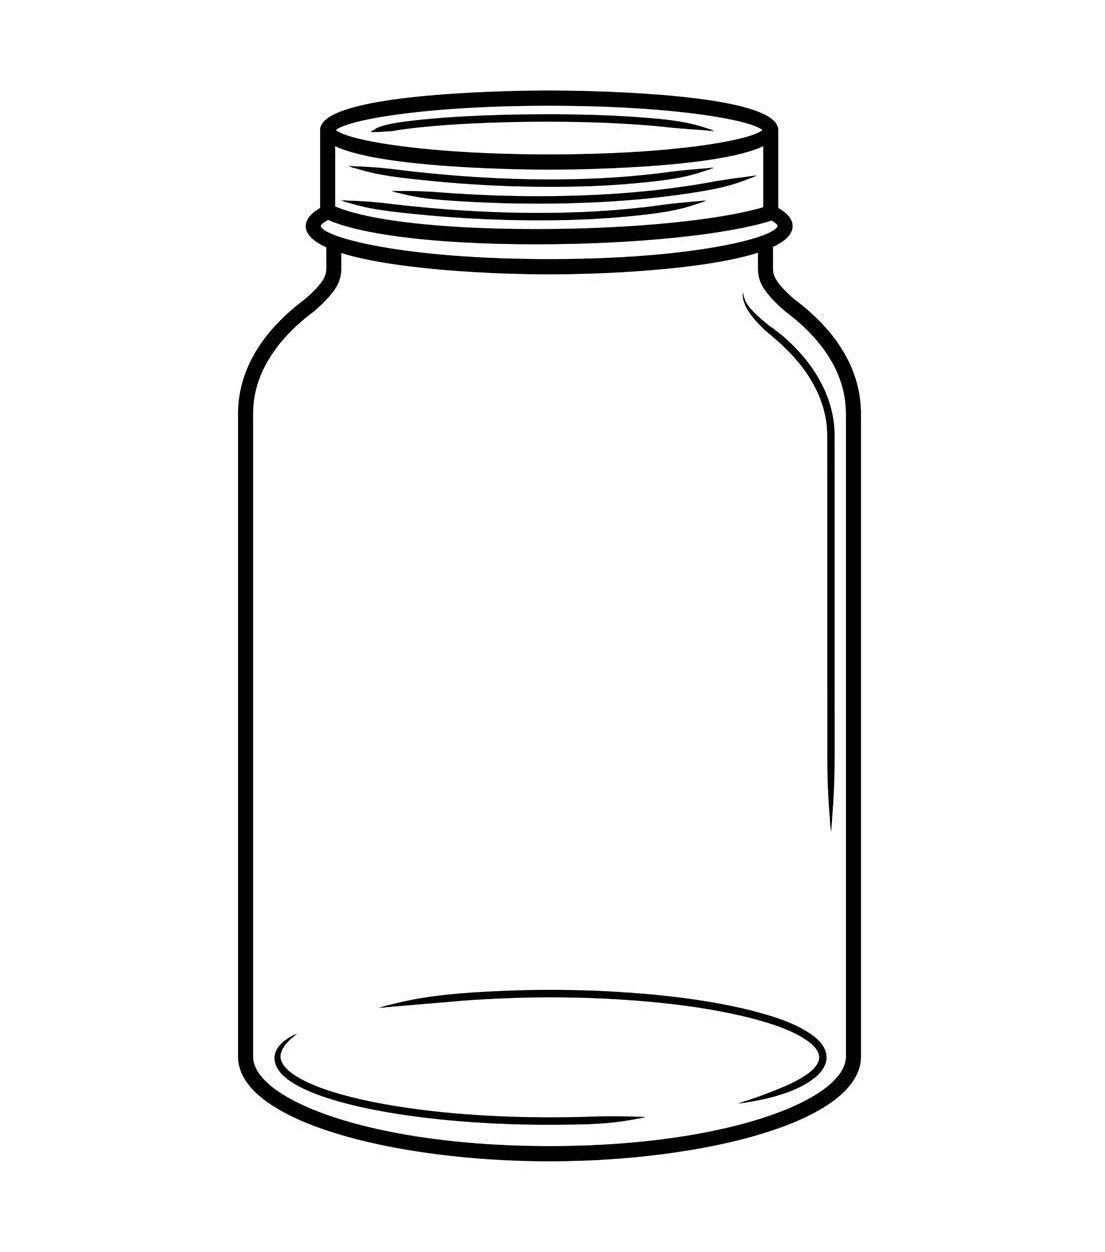 jar-clipart-outline-jar-outline-transparent-free-for-download-on